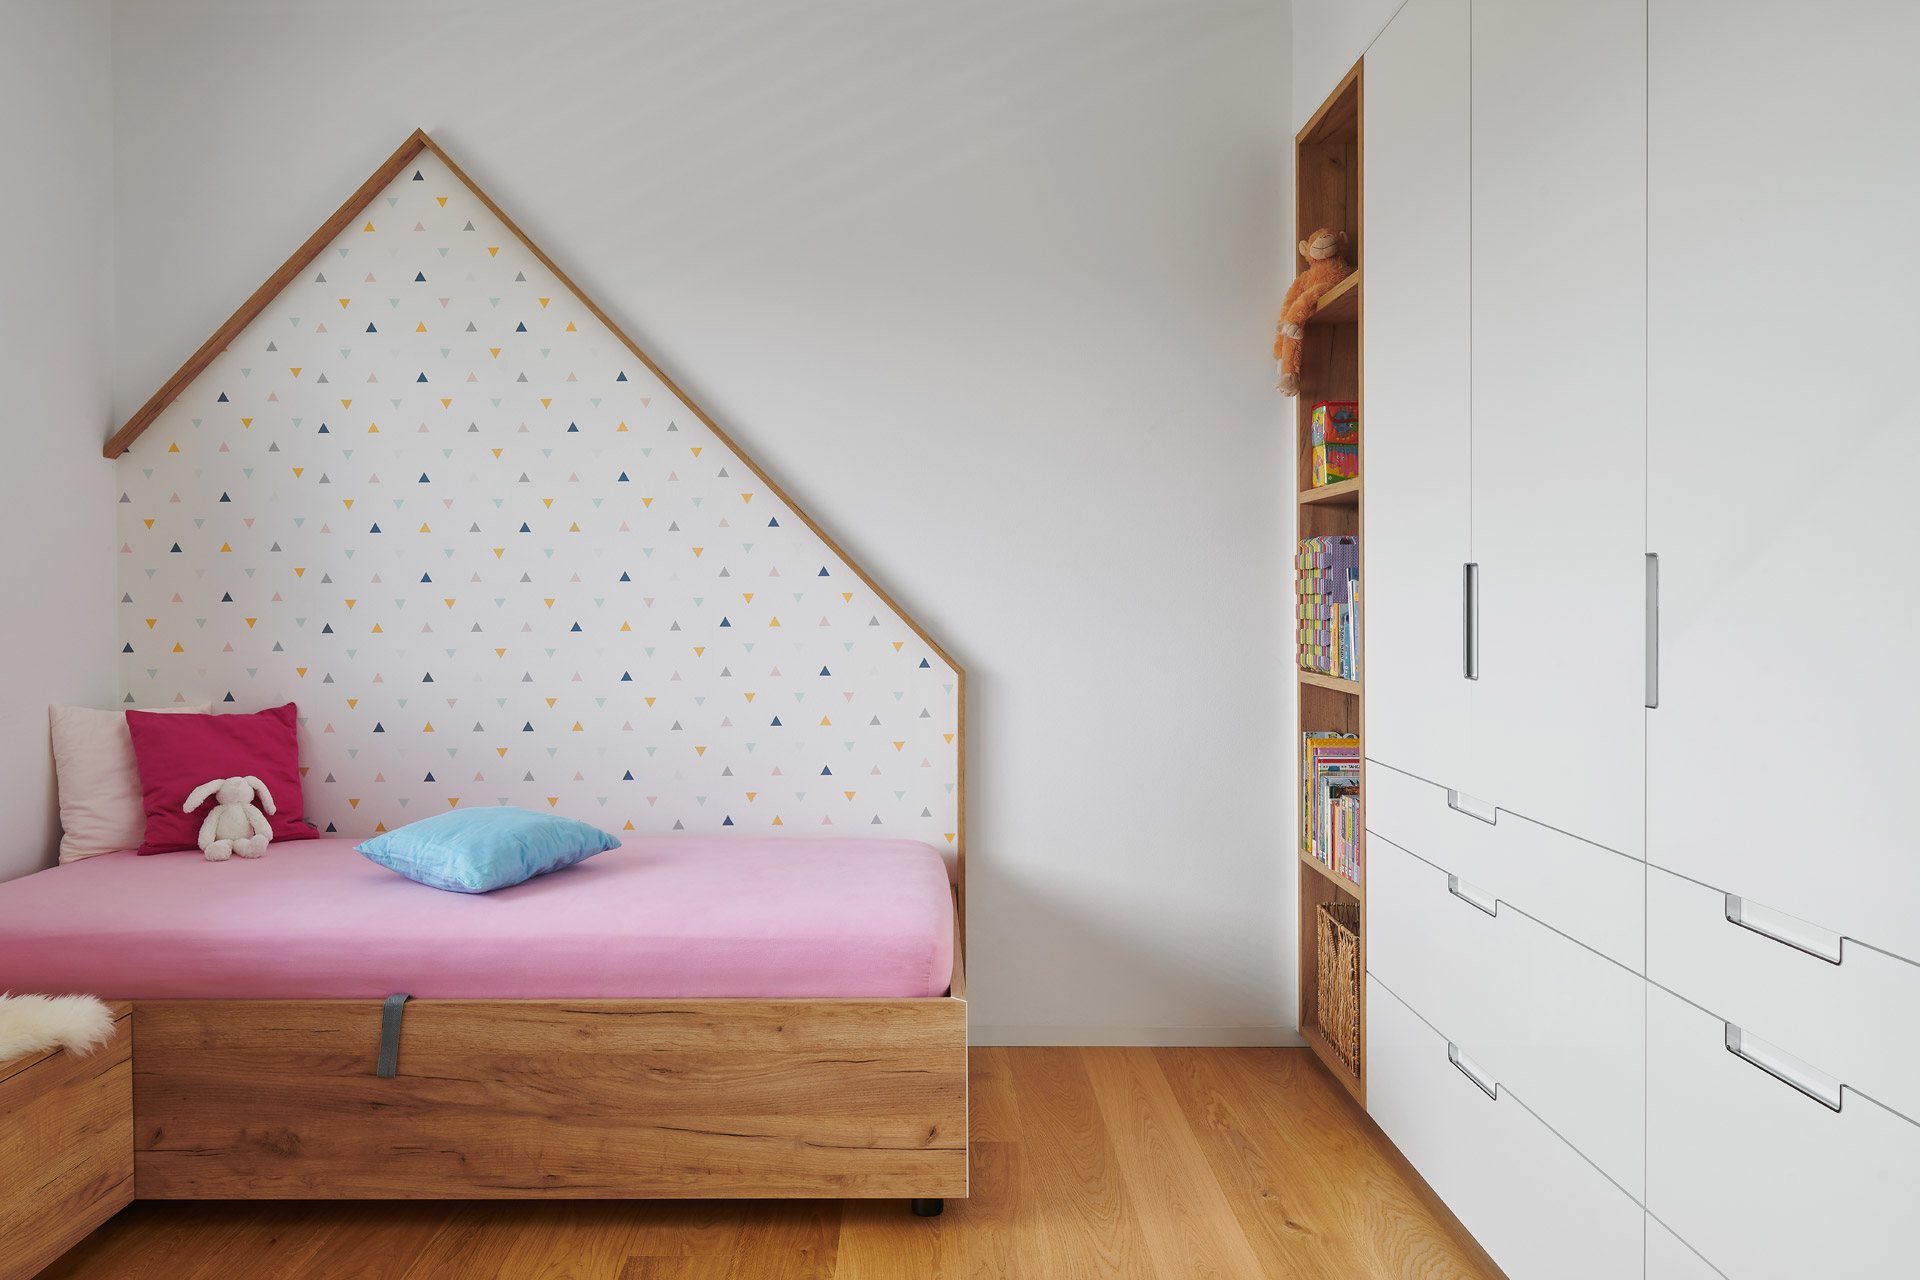 Hanák nábytek Moderní dům Ukázka realizace Interiér dětský pokoj